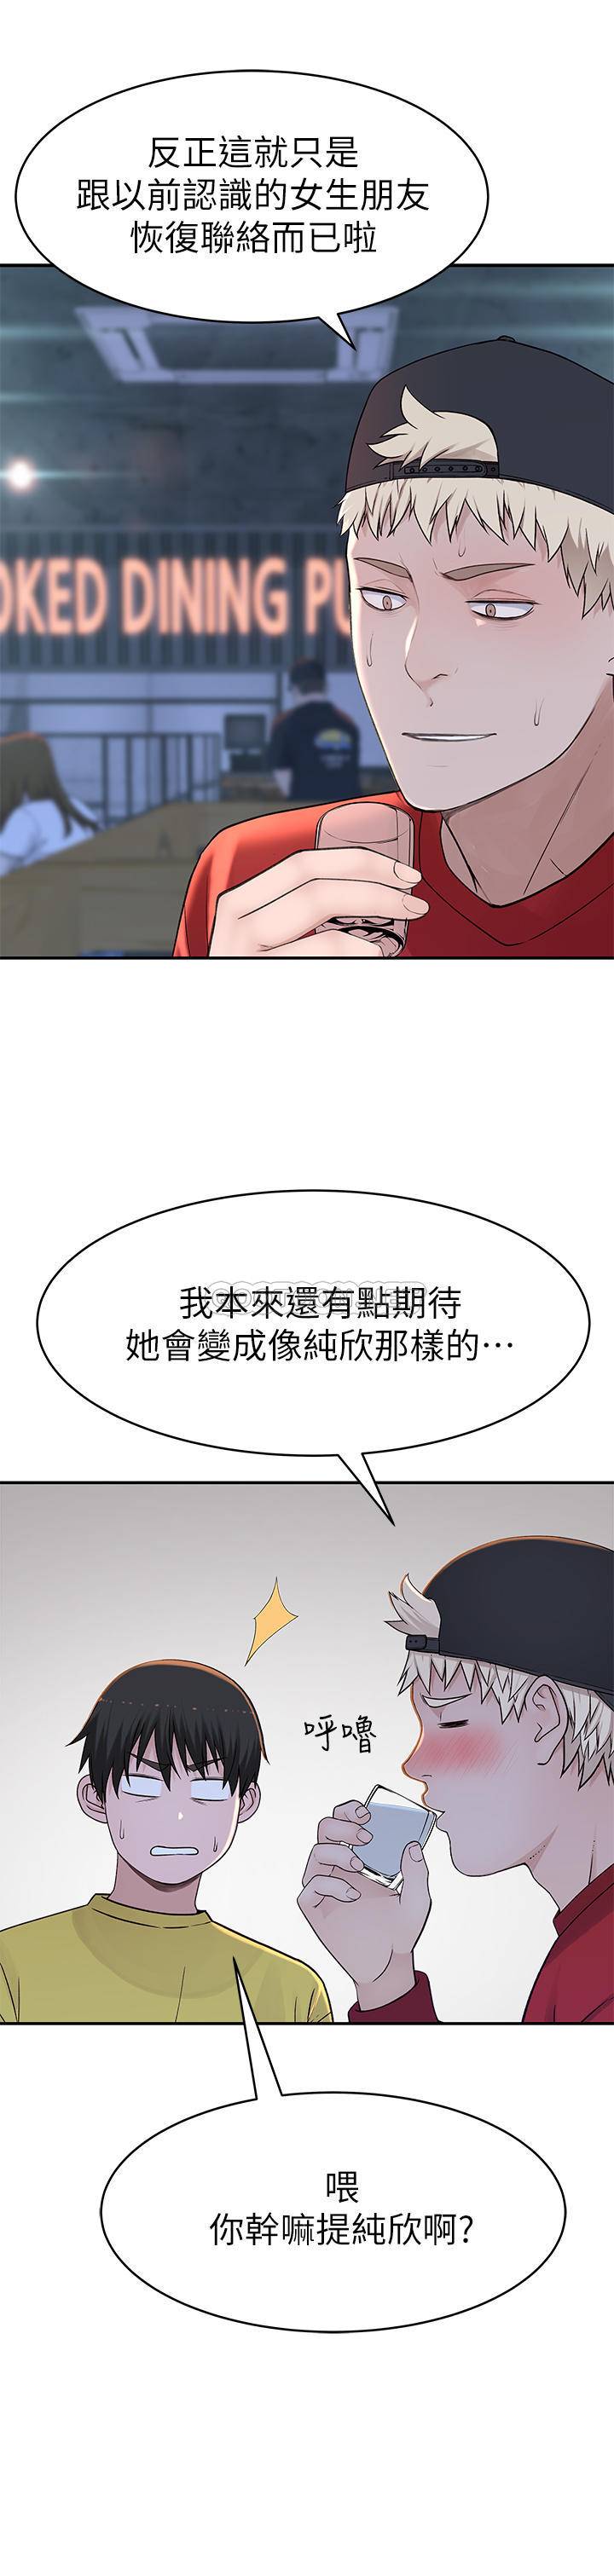 韩国污漫画 我們的非常關系 第50话-回归单身的江晓筑 31